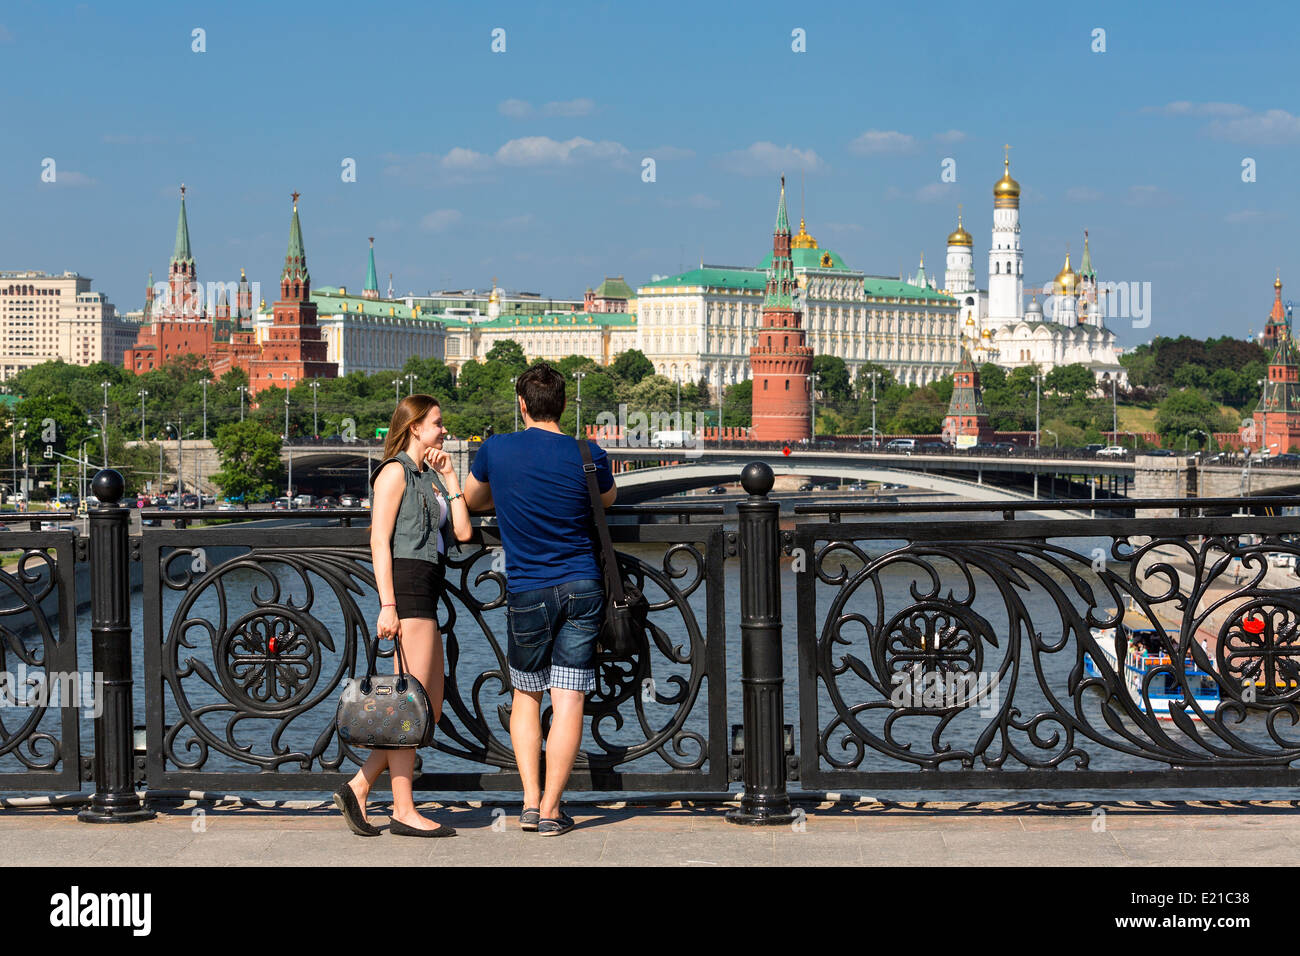 Moscou, Couple sur Passerelle et Kremlin Palace Banque D'Images